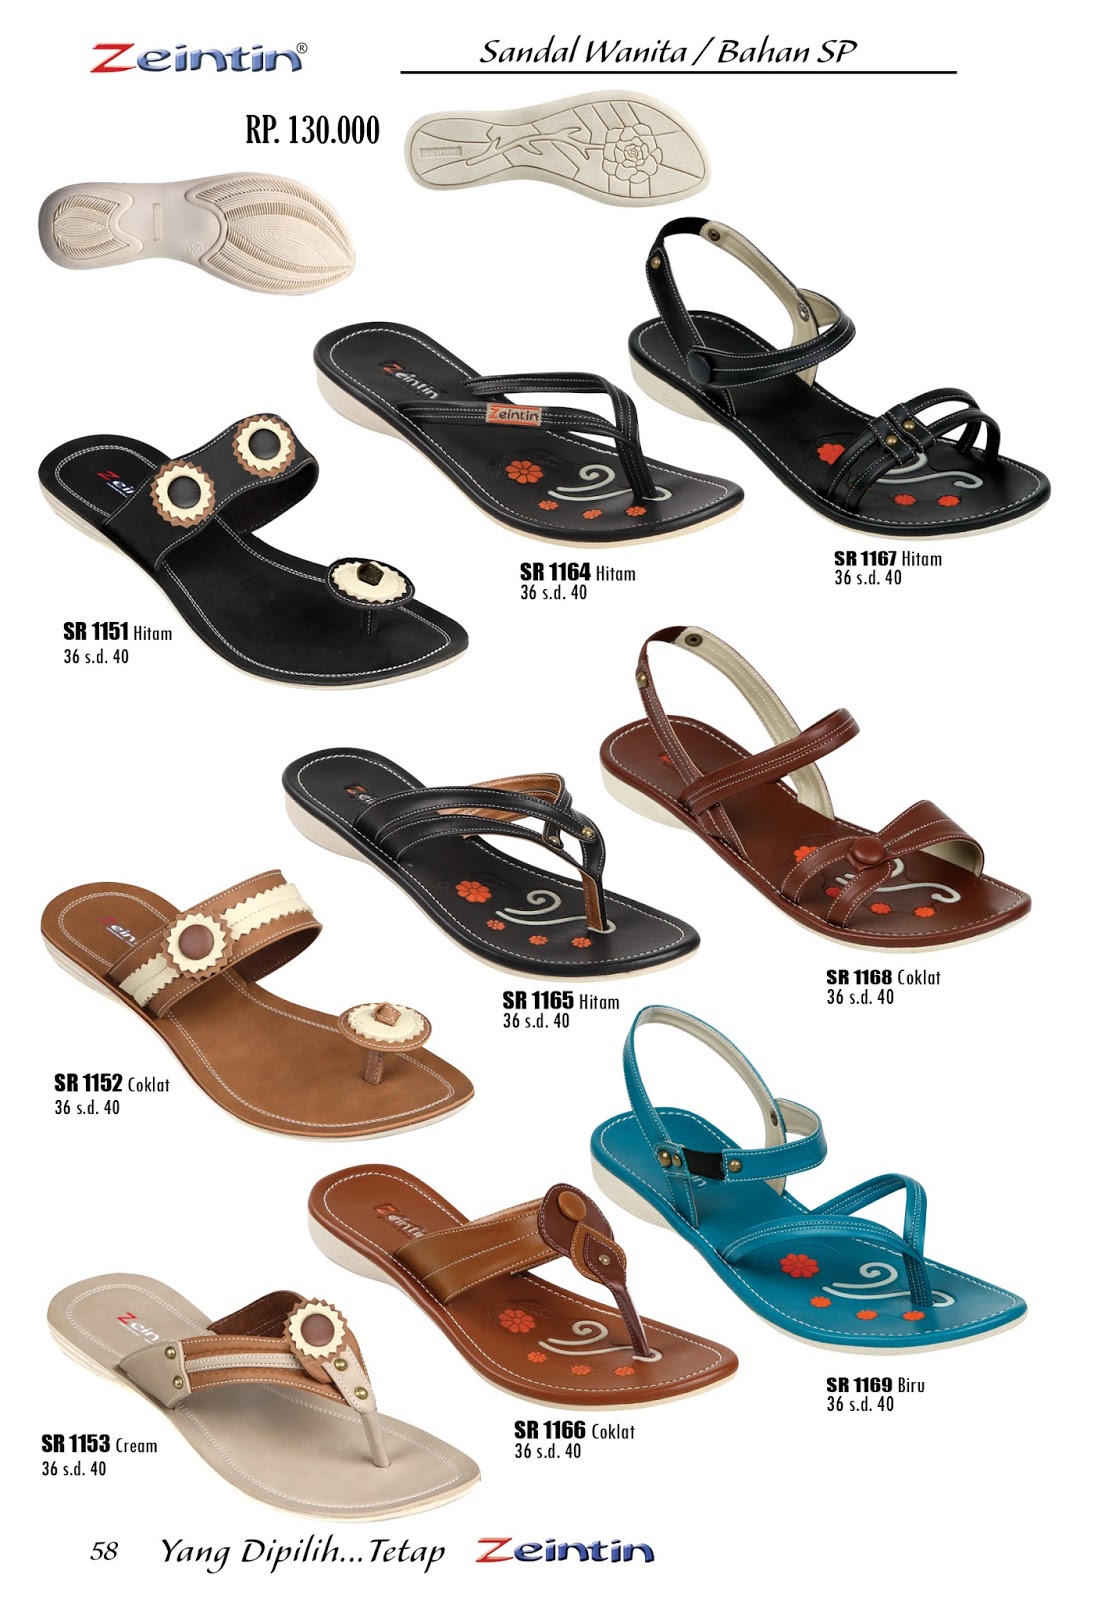  Sandal  Wanita  Cantik Online Mall  Sepatu dan Tas Indonesia